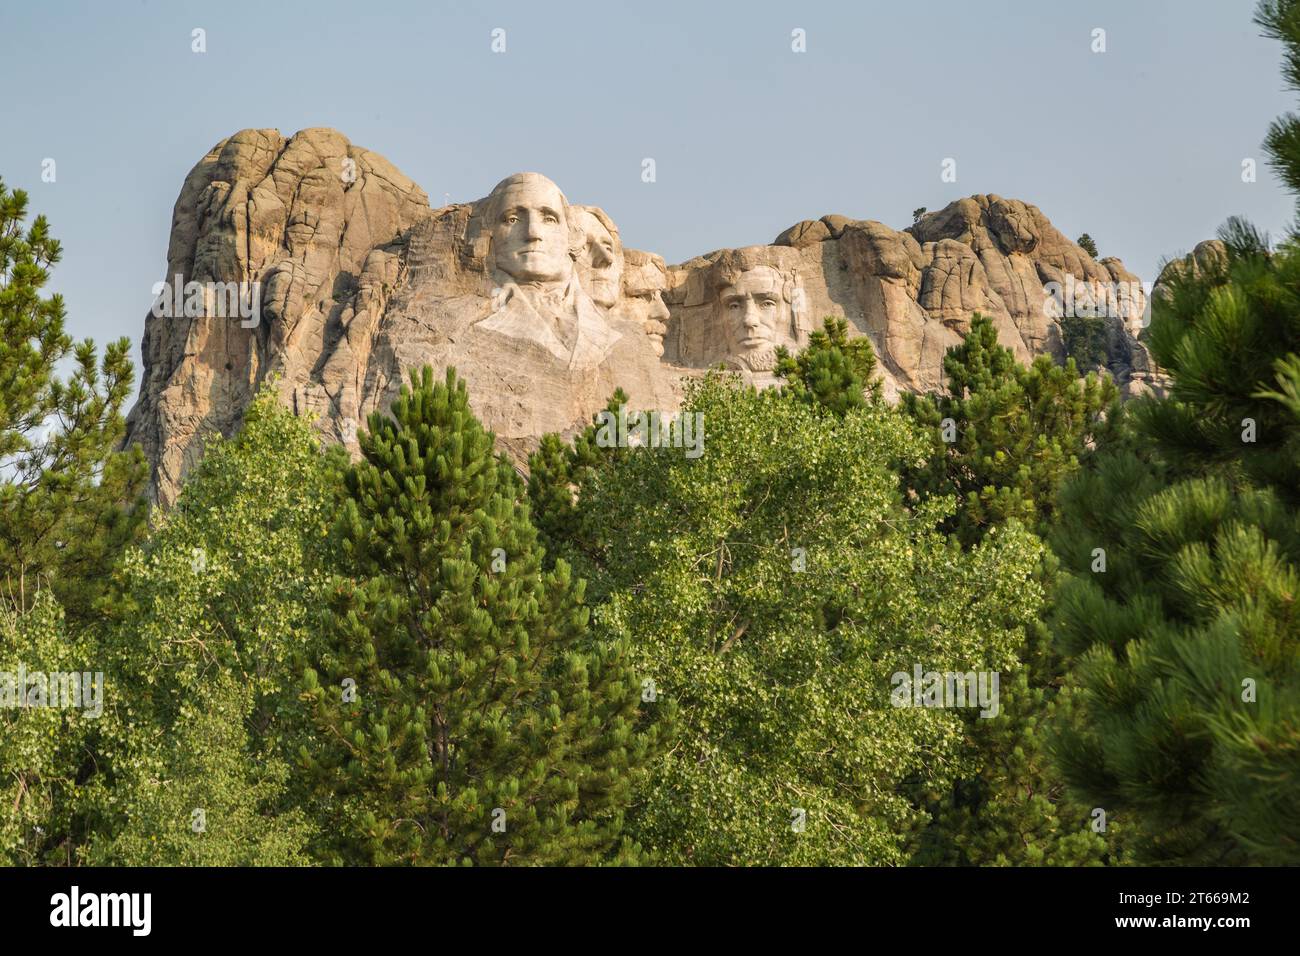 Geschnitzte Granitbüsten von George Washington, Thomas Jefferson, Theodore Teddy Roosevelt und Abraham Lincoln am Mount Rushmore National Monument Stockfoto